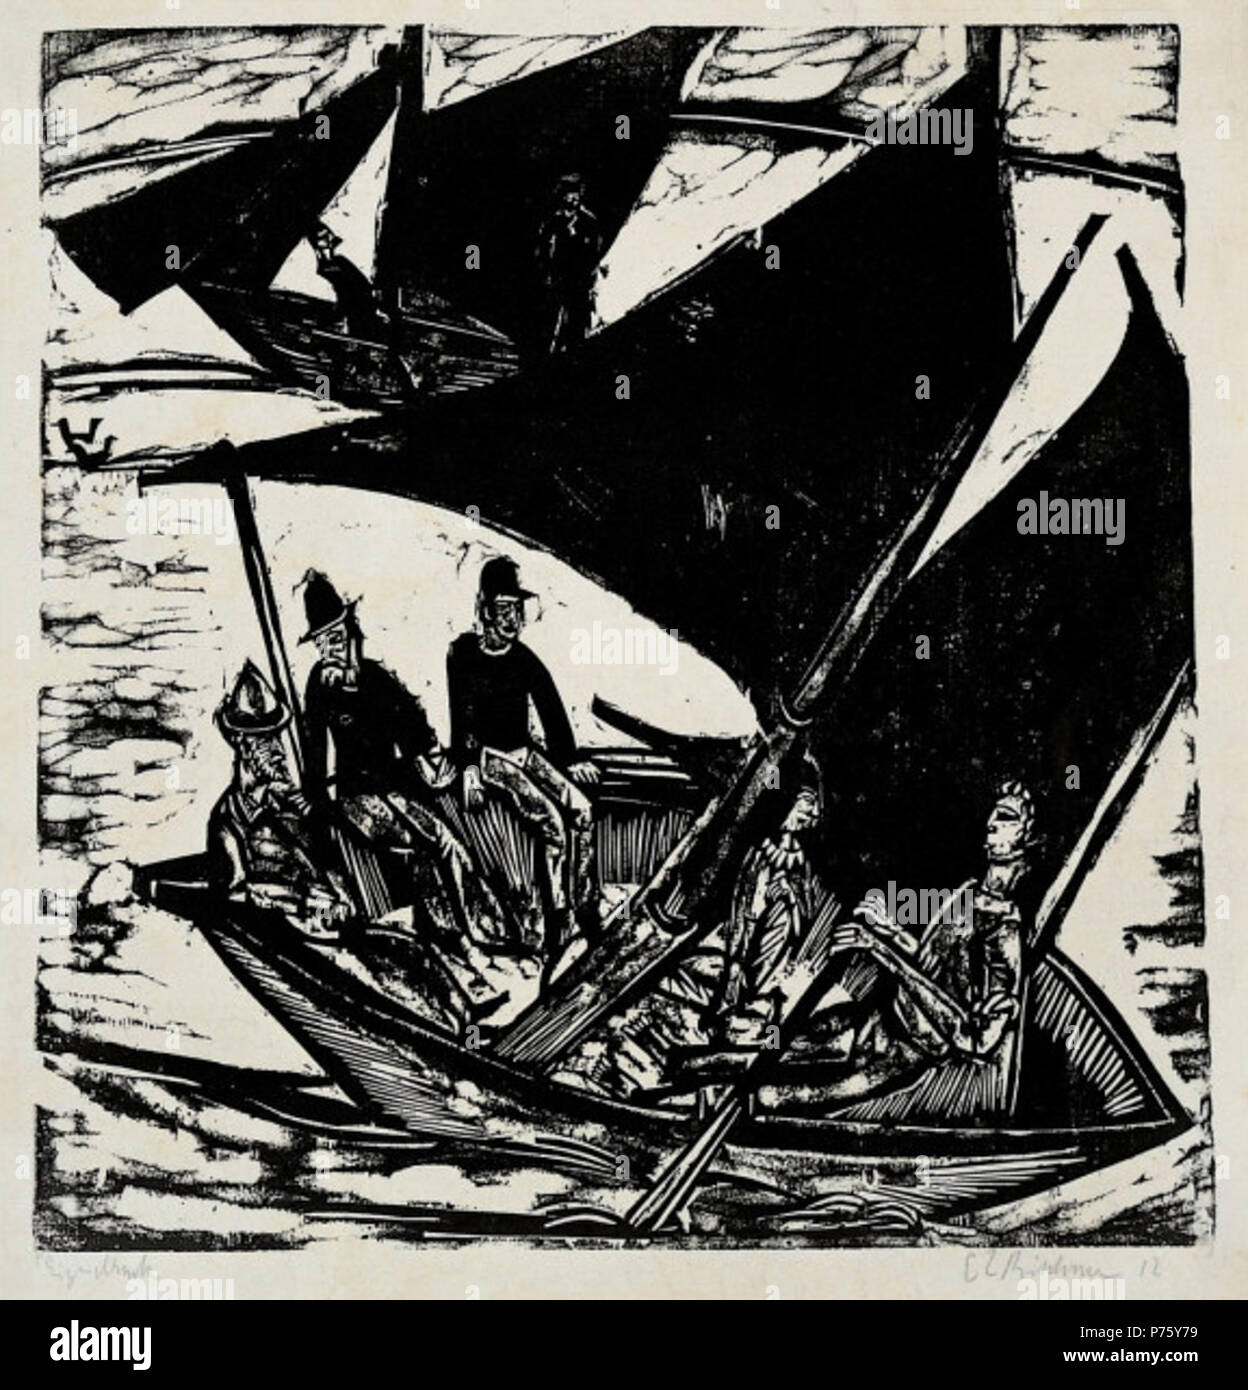 Barche a vela a Fehmarn. Xilografia nero con aggiunte di lavaggio, membro aii/III. Blocco: 16 1/2 x 15 7/8 in. (41,9 x 40,4 cm); foglio: 21 3/4 x 17 3/8 in. (55,2 x 44,1 cm). 1914 10 Ernst Ludwig Kirchner - barche a vela a Fehmarn Foto Stock